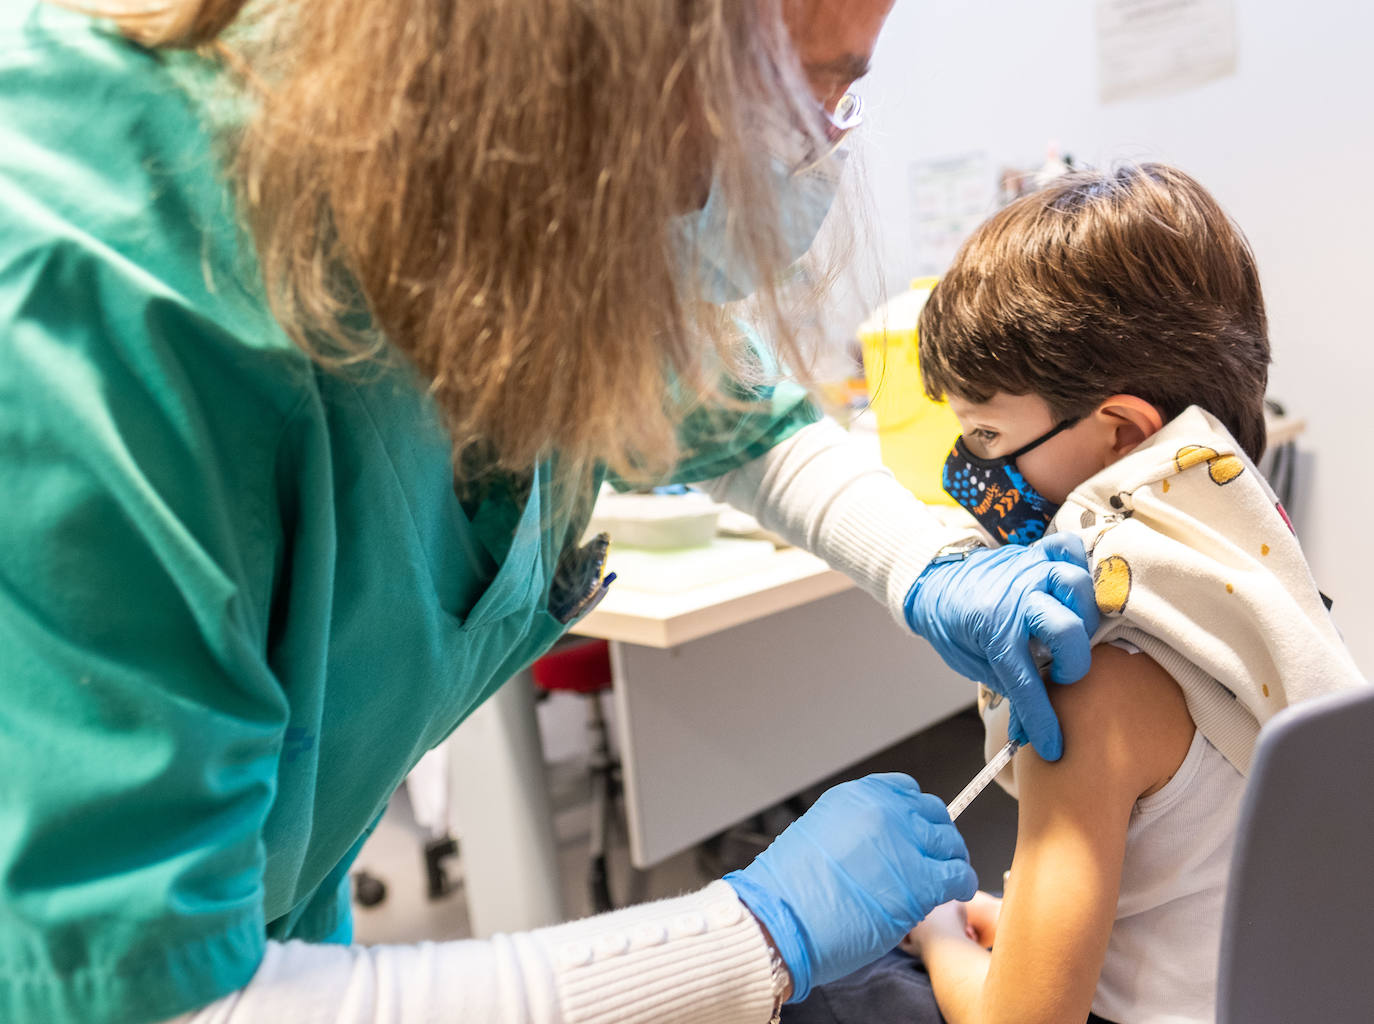 El centro de salud de Arnedo vacuna durante esta semana a los niños de la zona. 